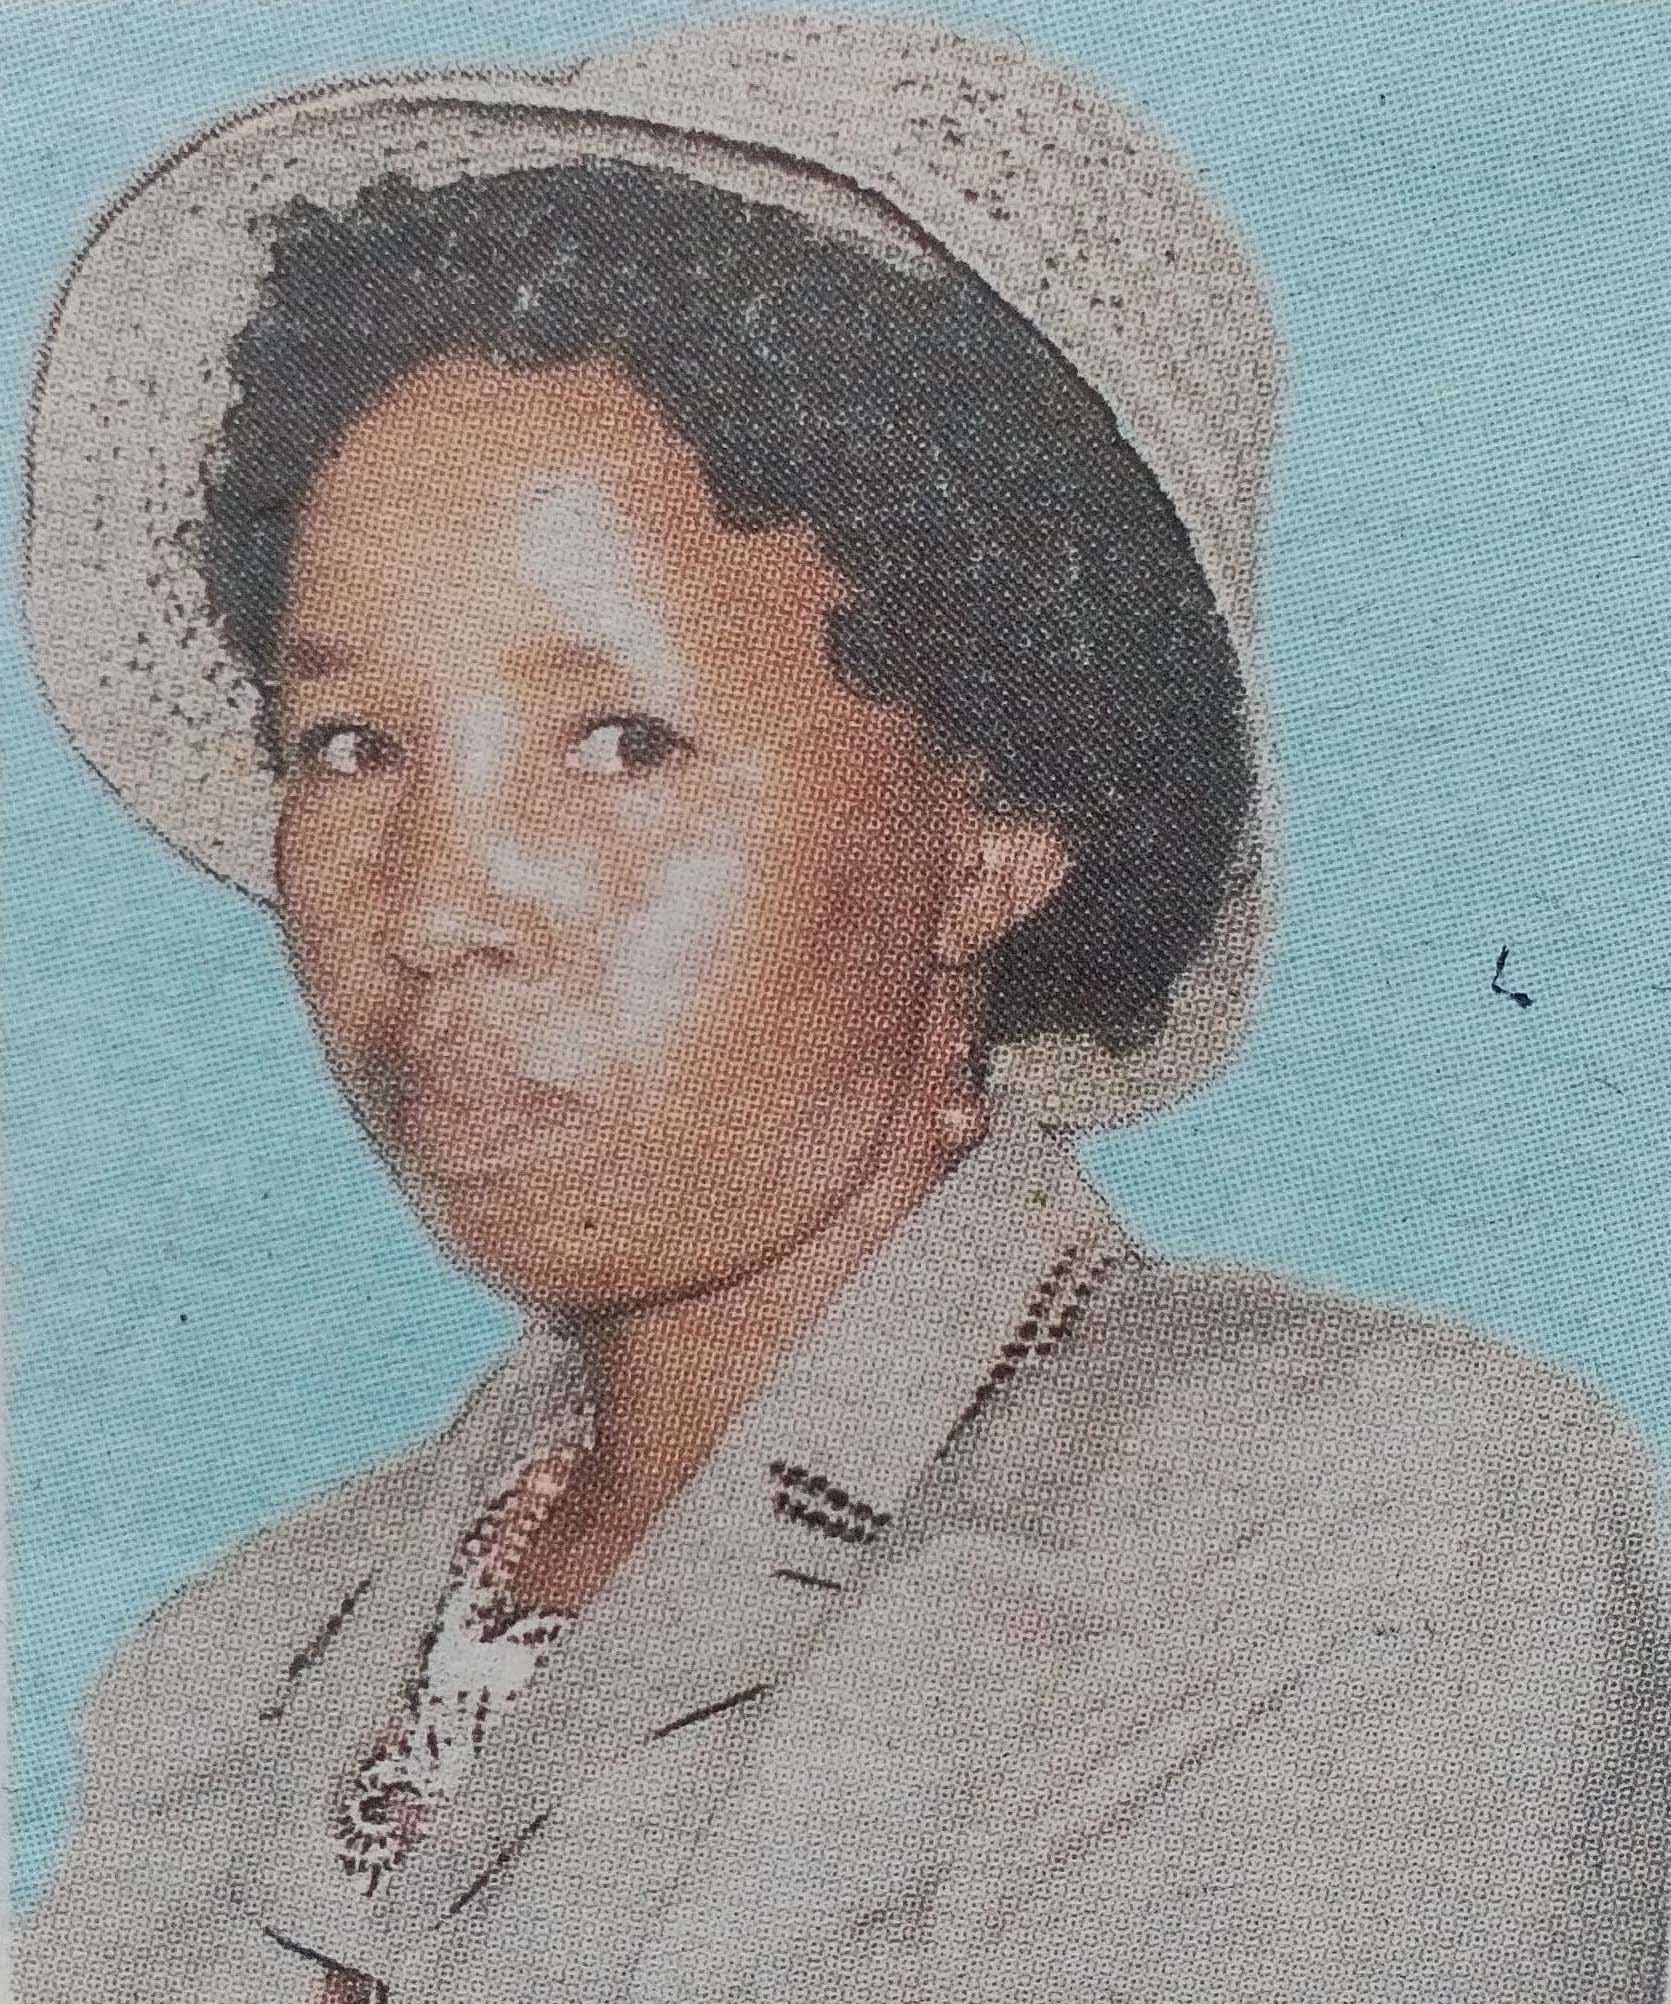 Obituary Image of Grace Wairimu Njau (Wa Mwangi)